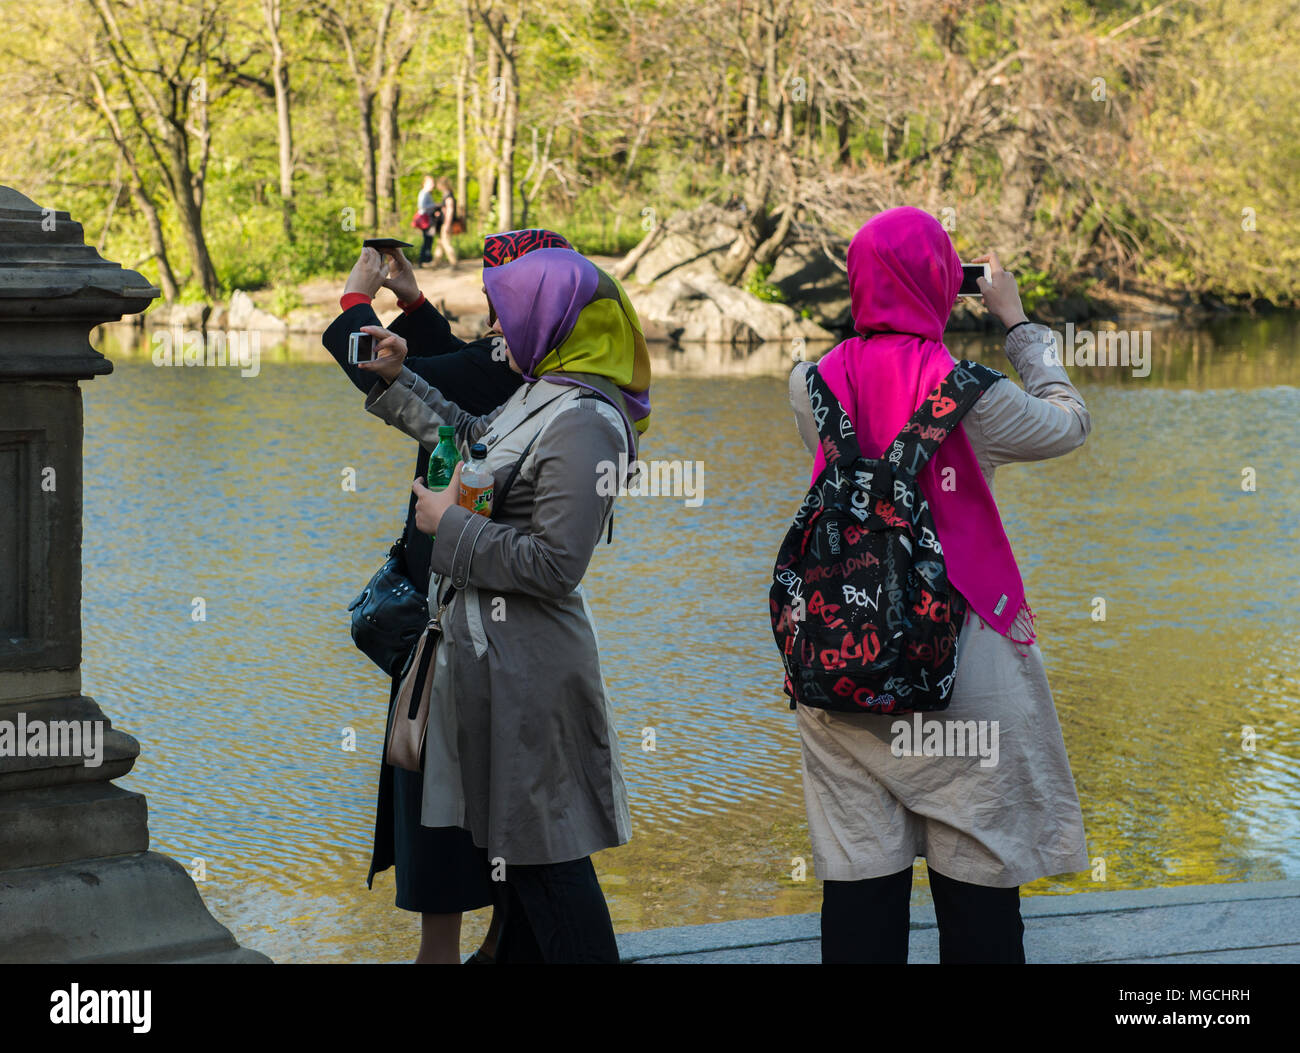 Trois femmes, le port du foulard coloré, de prendre des photographies dans Central Park, New York City, USA Banque D'Images